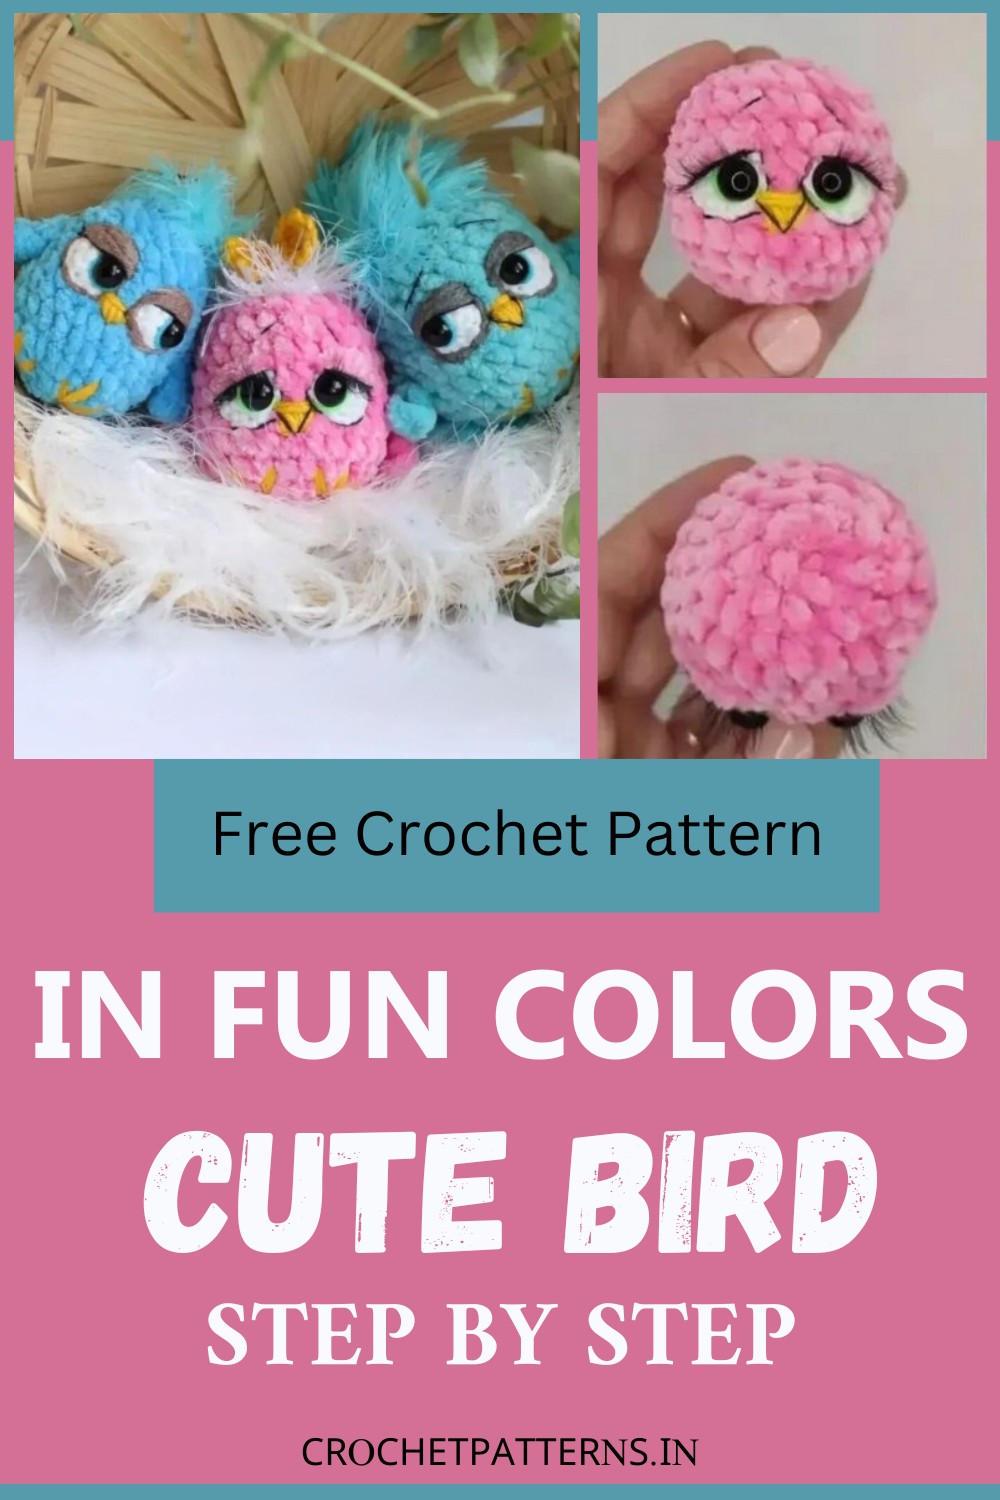 Free Crochet Bird Pattern In Fun Colors